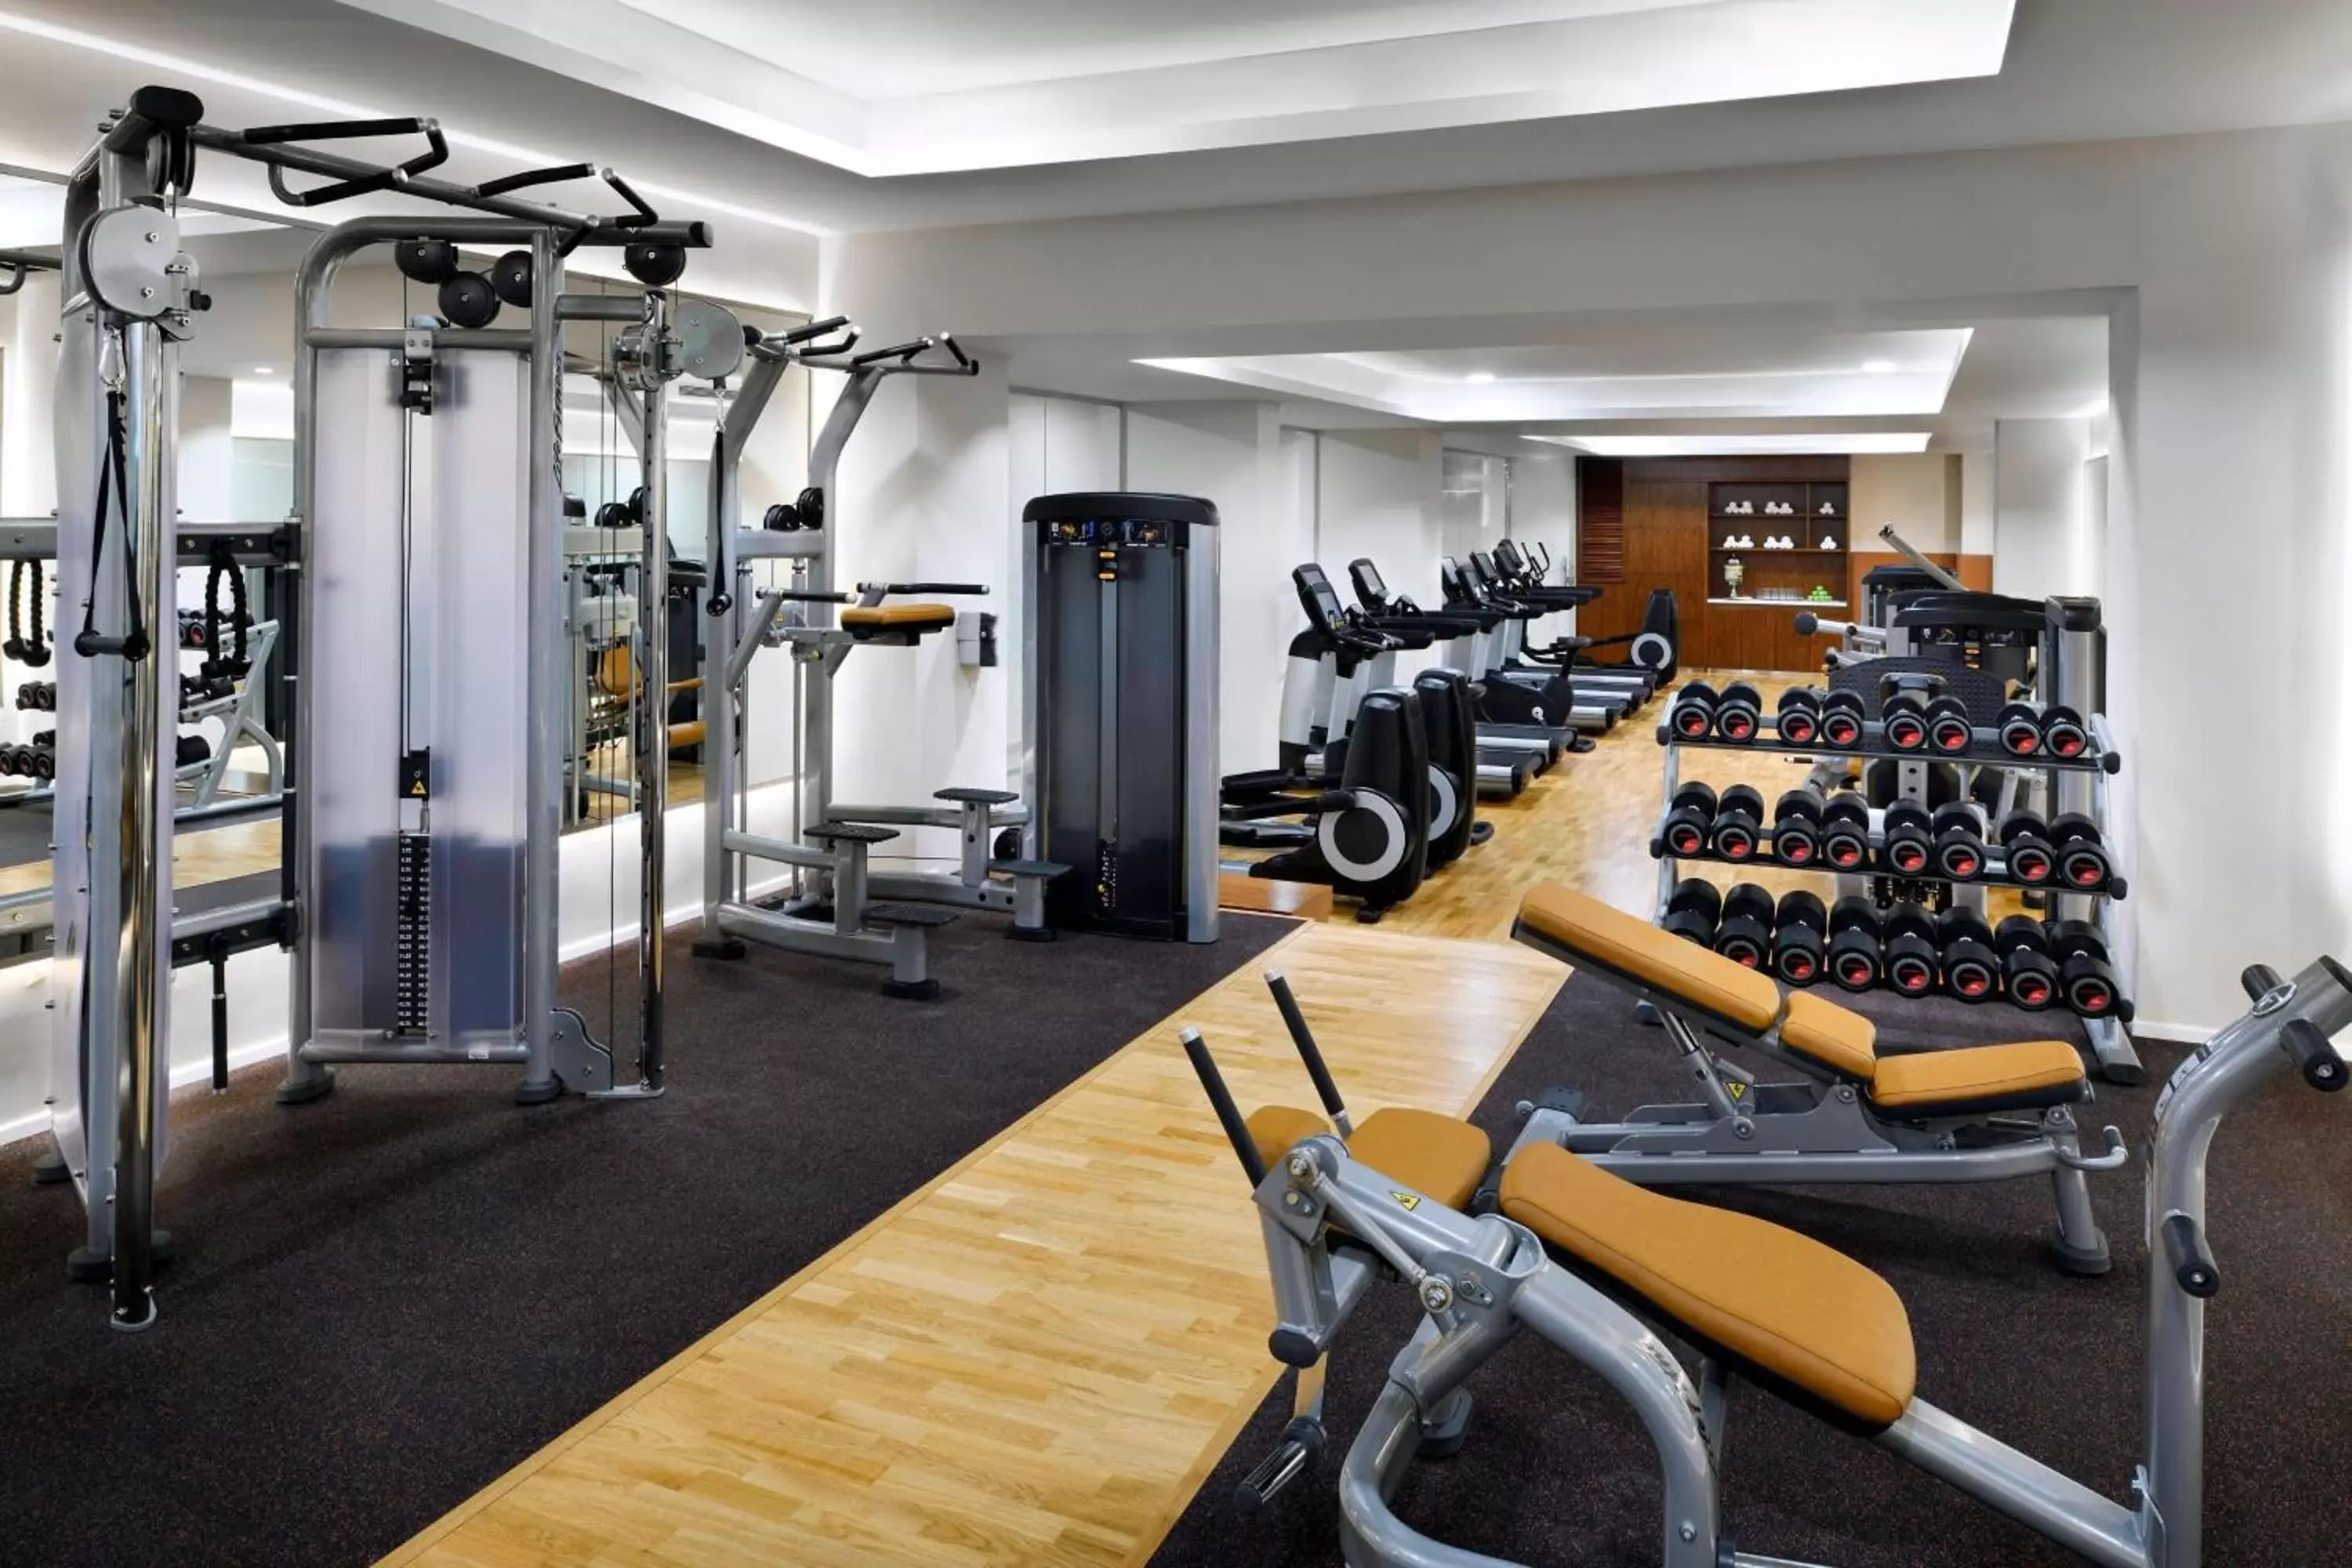 Fitness centre/facilities, Fitness Center/Facilities in Amman Marriott Hotel